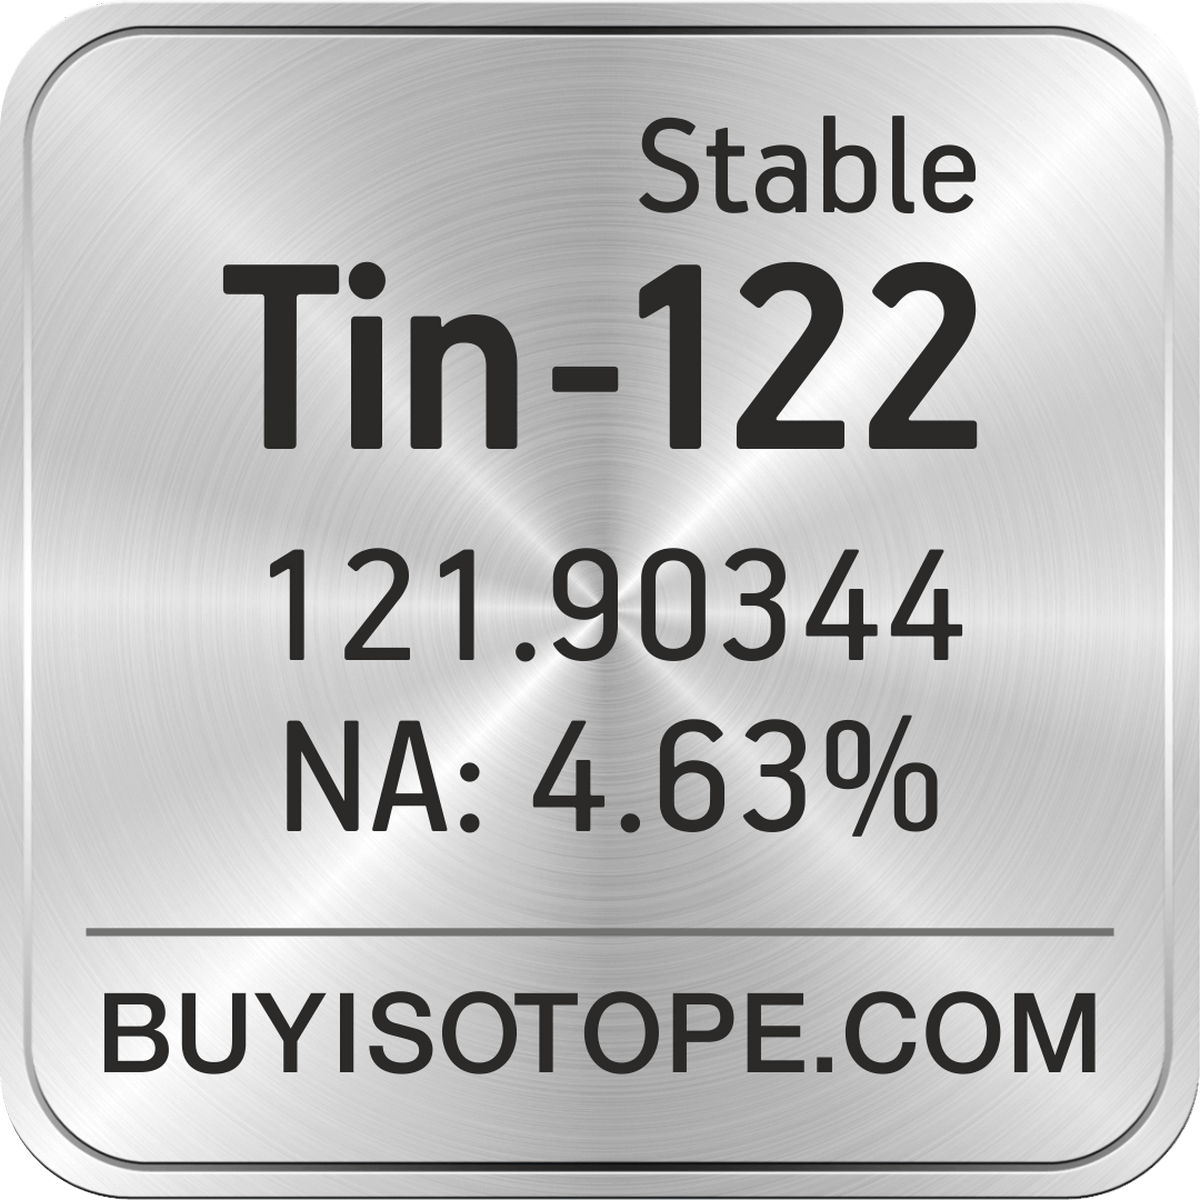 Tin Facts (Atomic Number 50 or Sn)